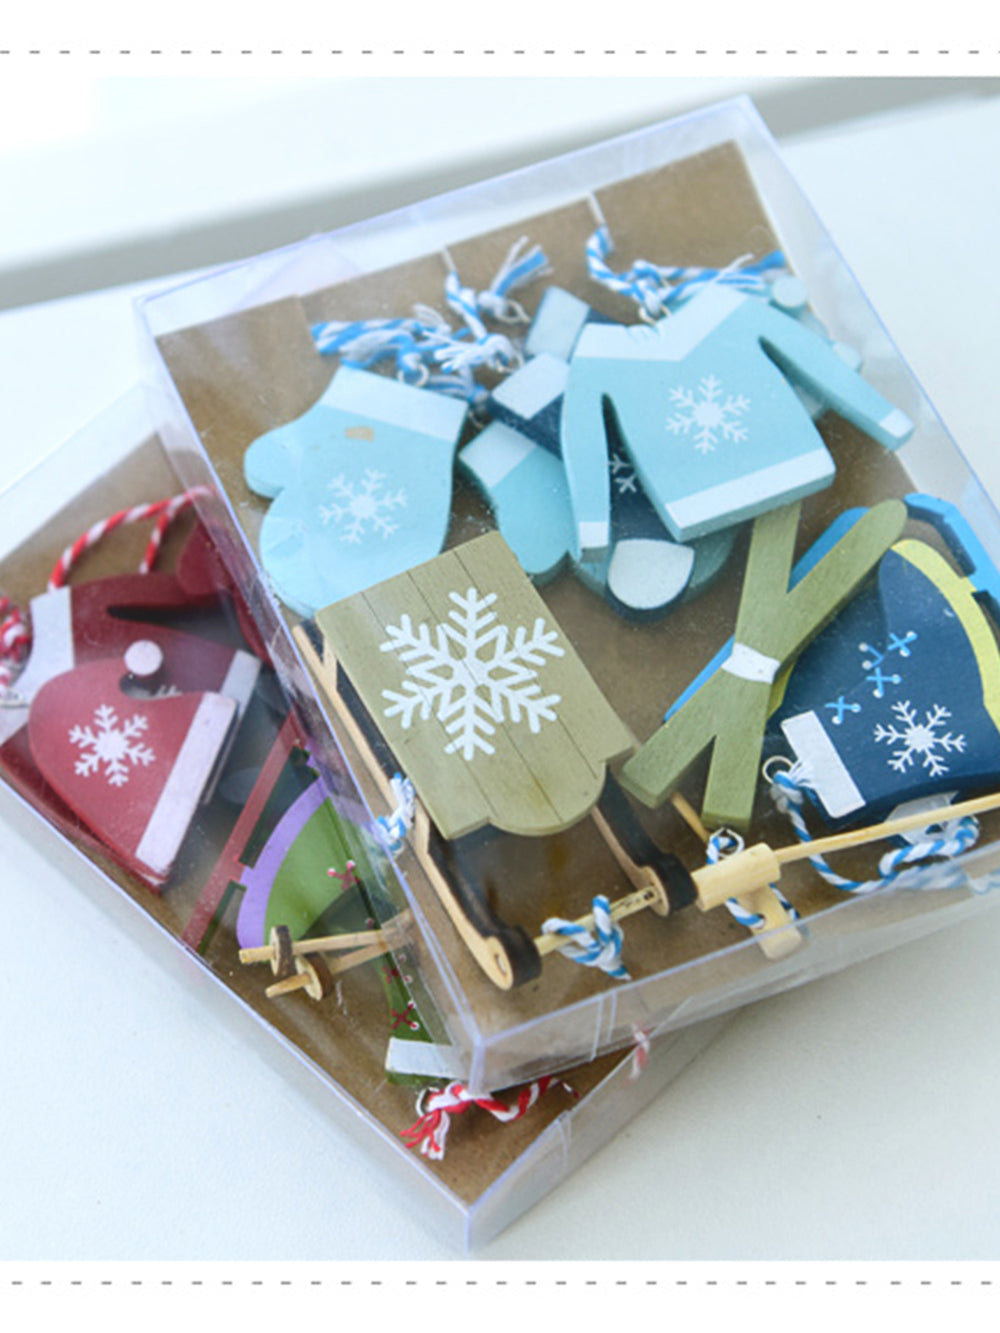 Boîte à pendentif en forme d'arbre de Noël, chaussettes, gants, traîneau